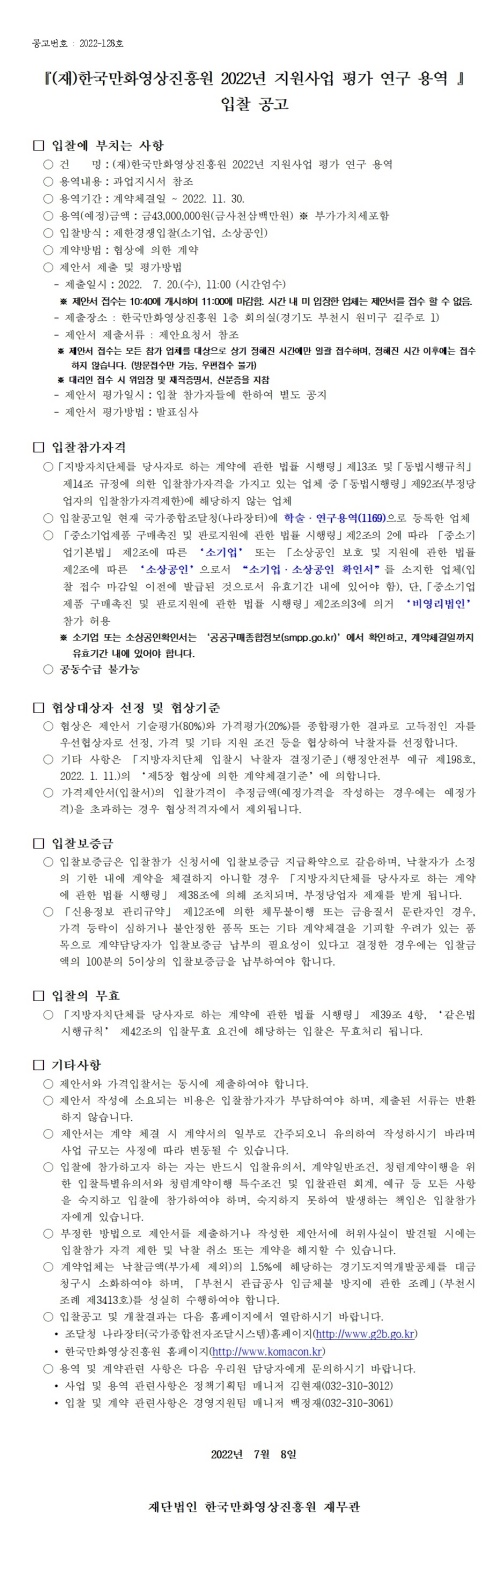 『2022년 한국만화영상진흥원 지원 사업 평가 연구 용역』 입찰 공고